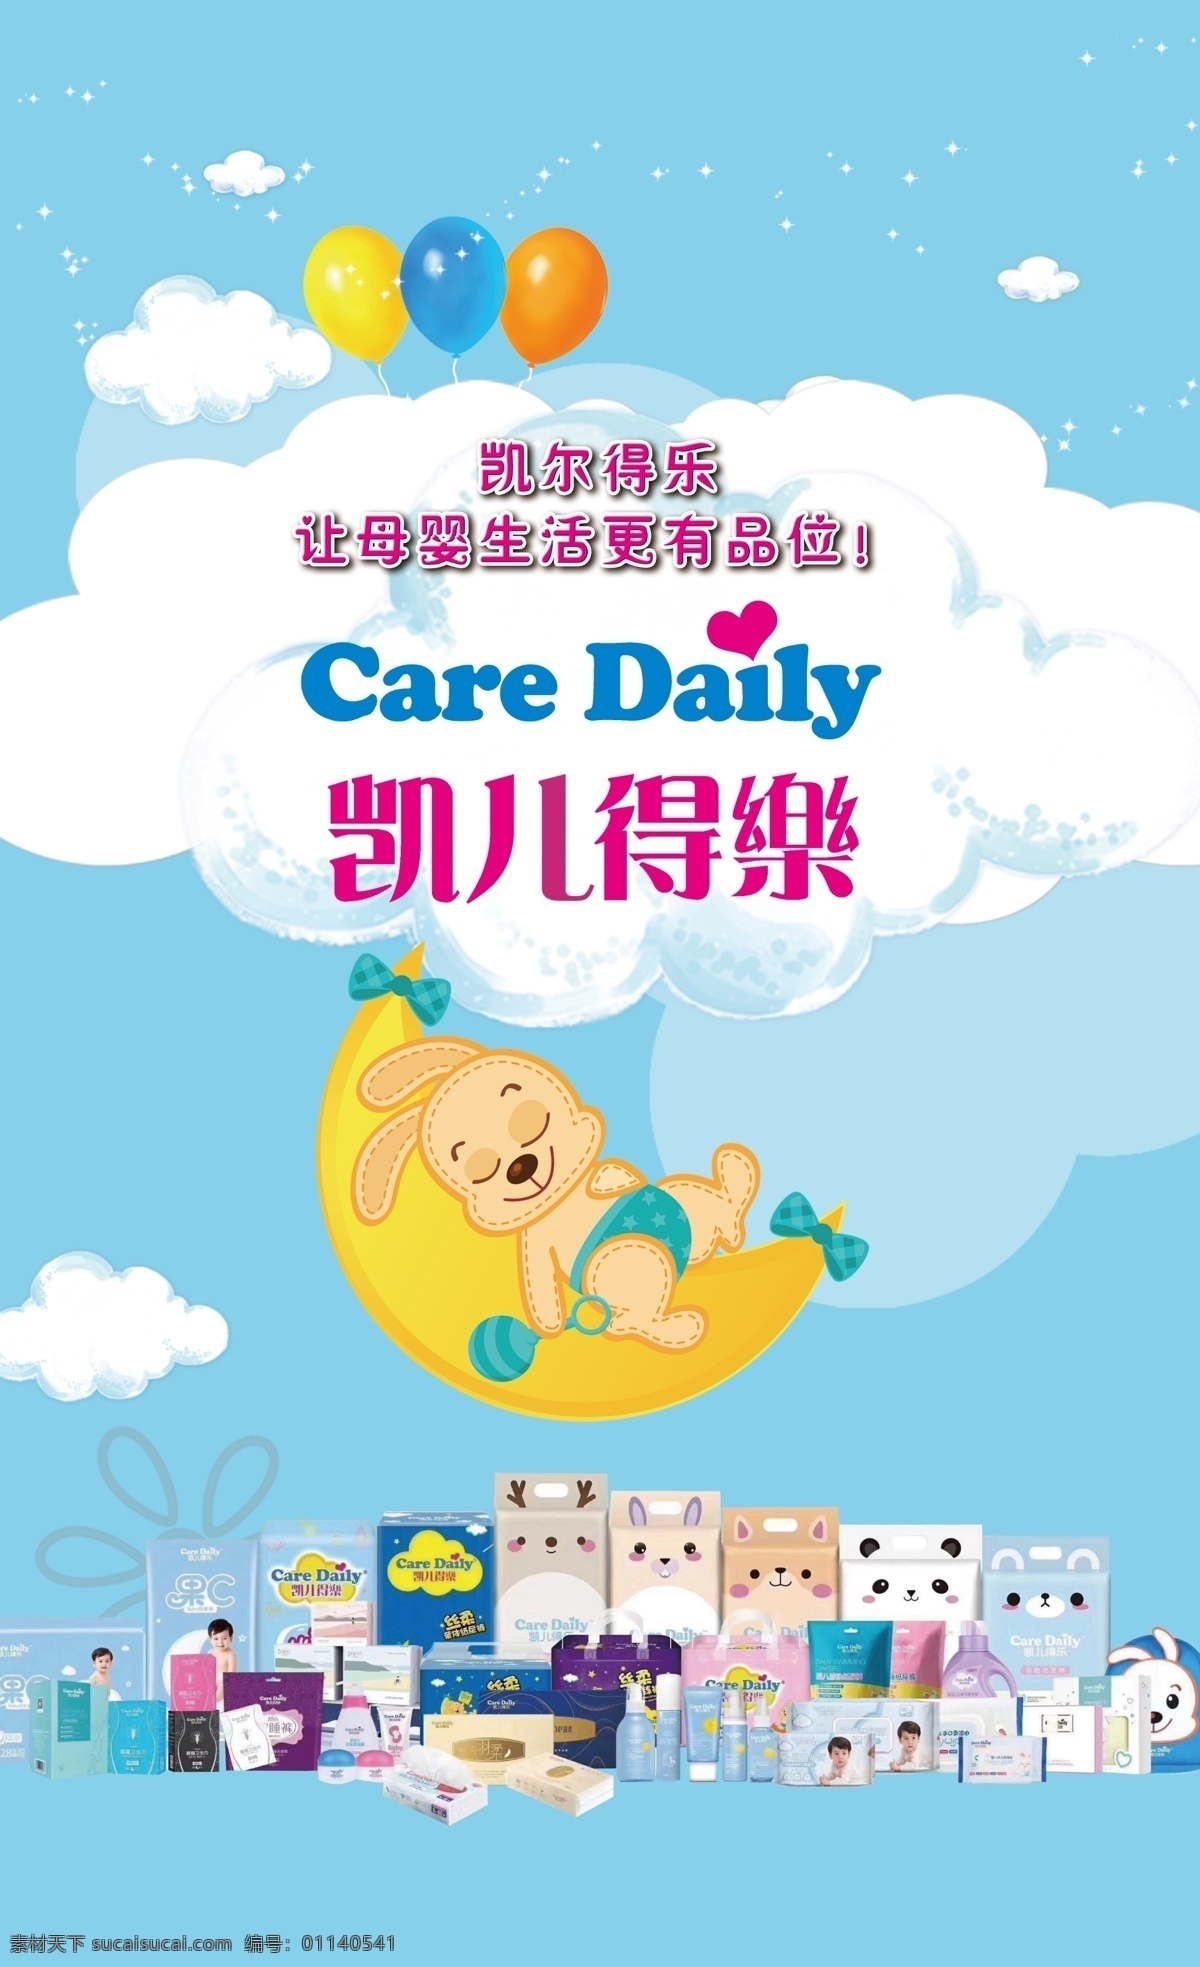 凯尔得乐 care daily 拉拉裤 纸尿裤 卫生巾 洗衣液 婴幼儿用品 舒适 孕婴用品